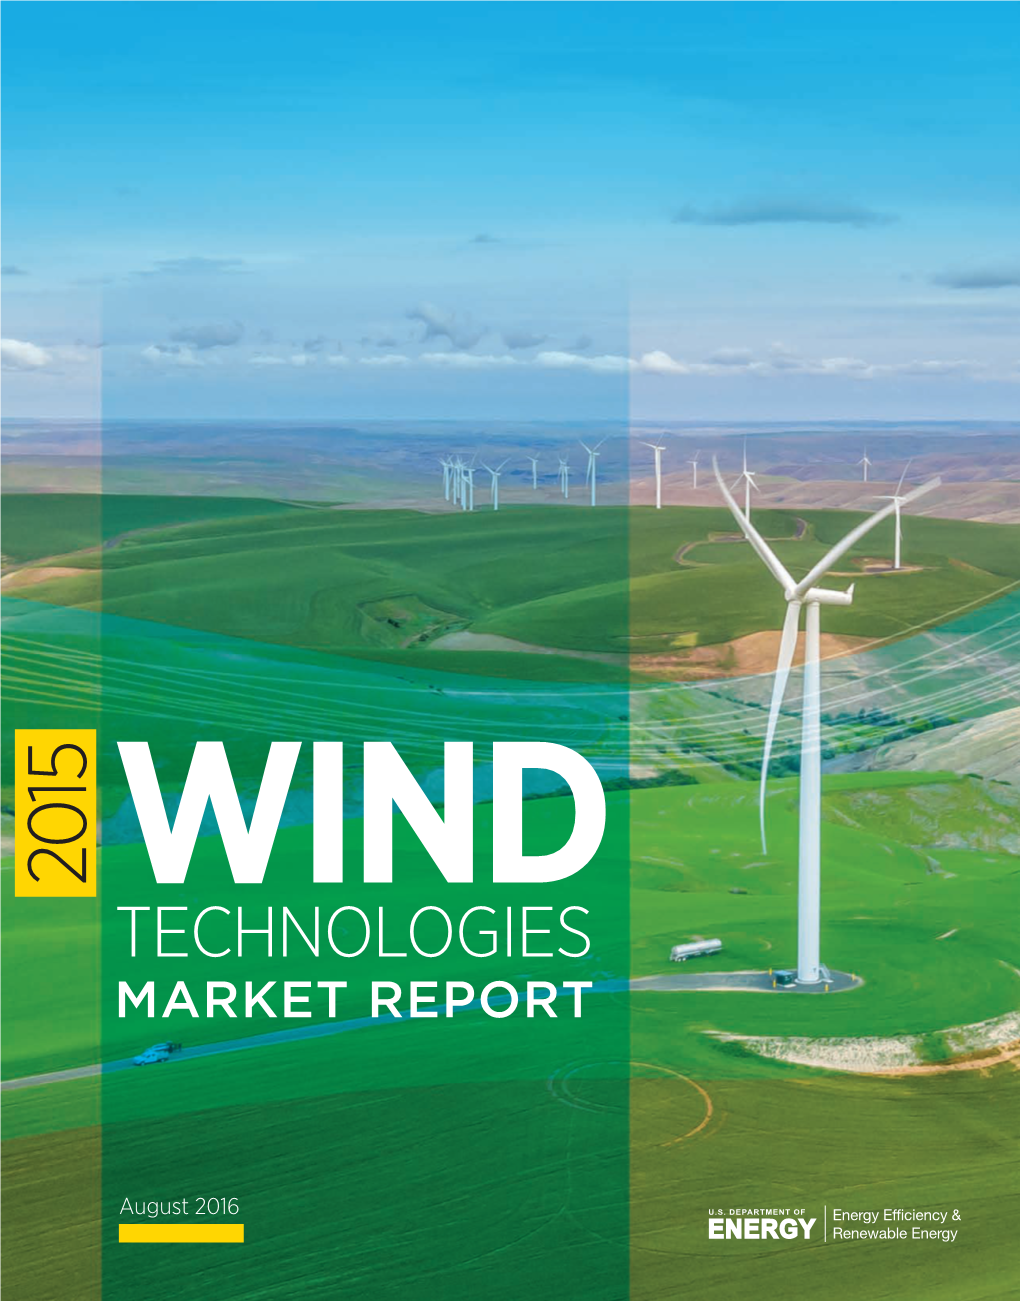 2015 Wind Technologies Market Report, U.S. Department of Energy